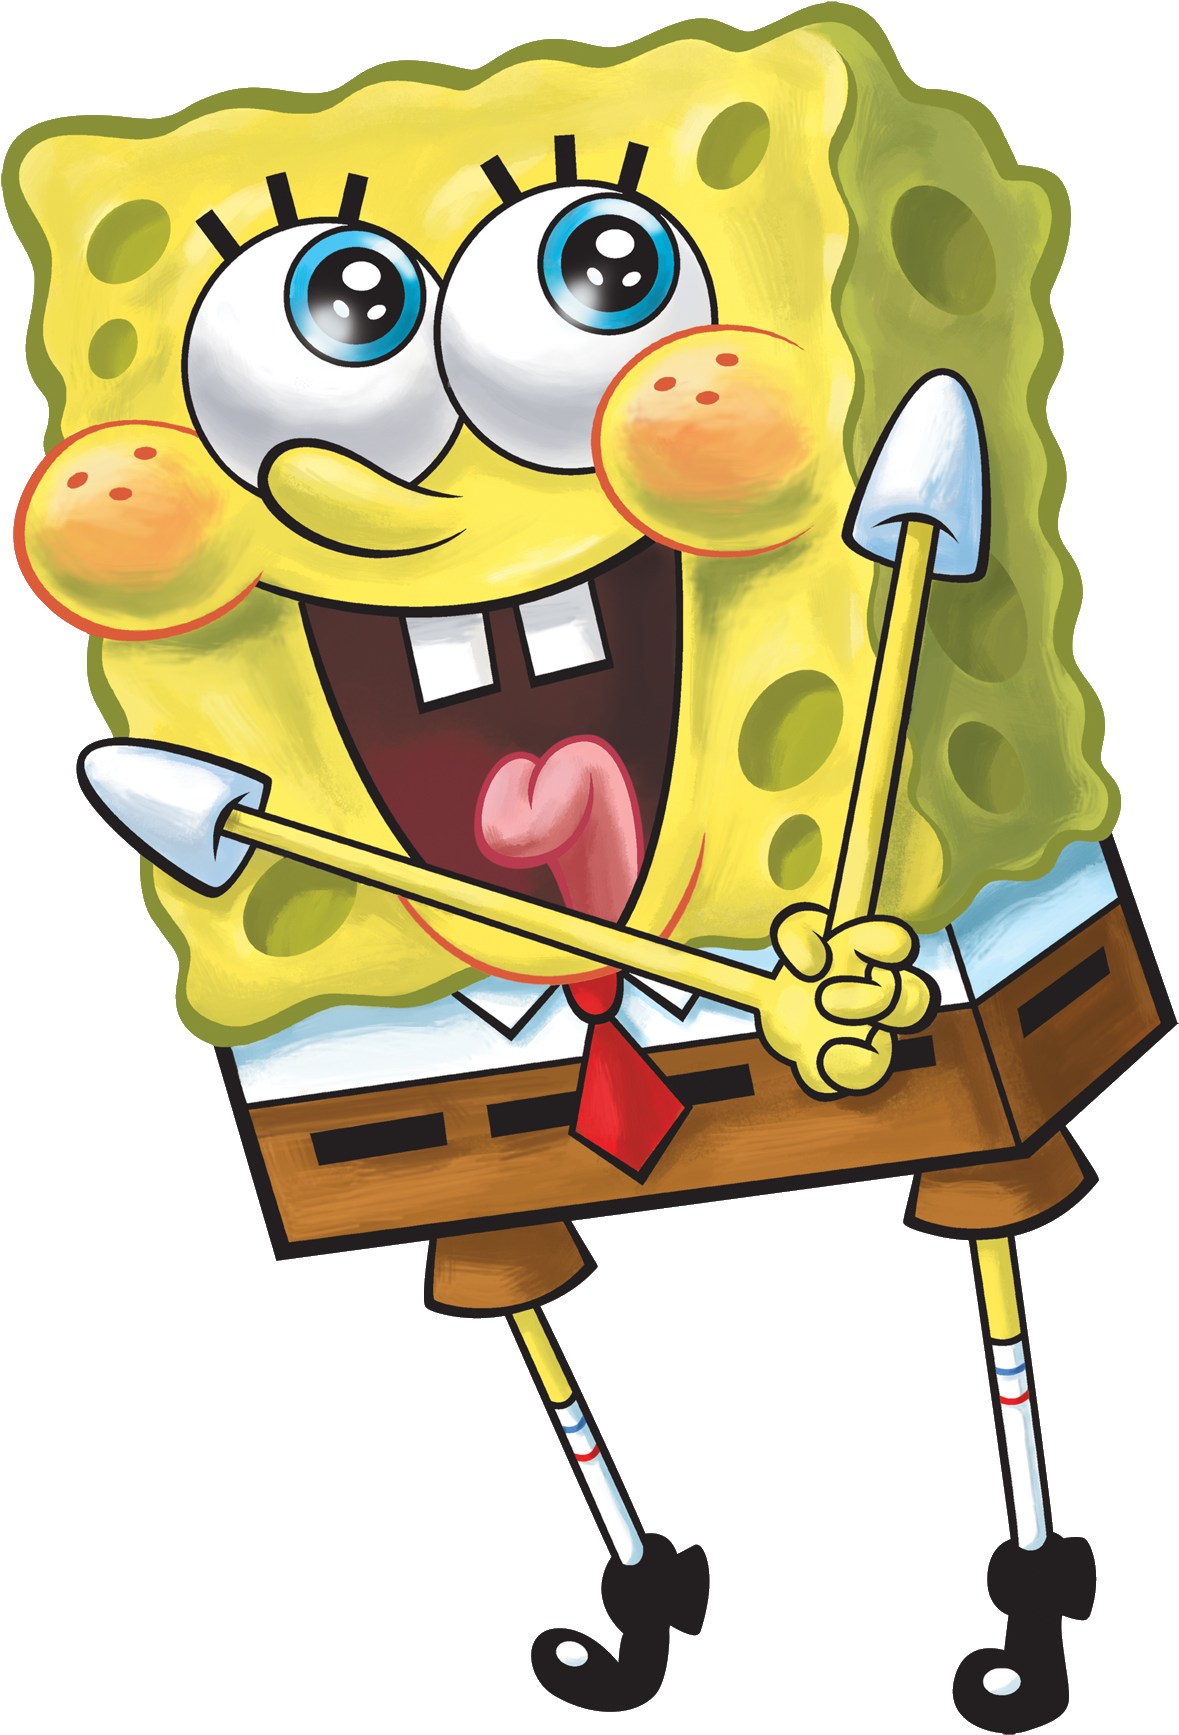 Spongebob Squarepants - Spongebob Squarepants (1200x1768)